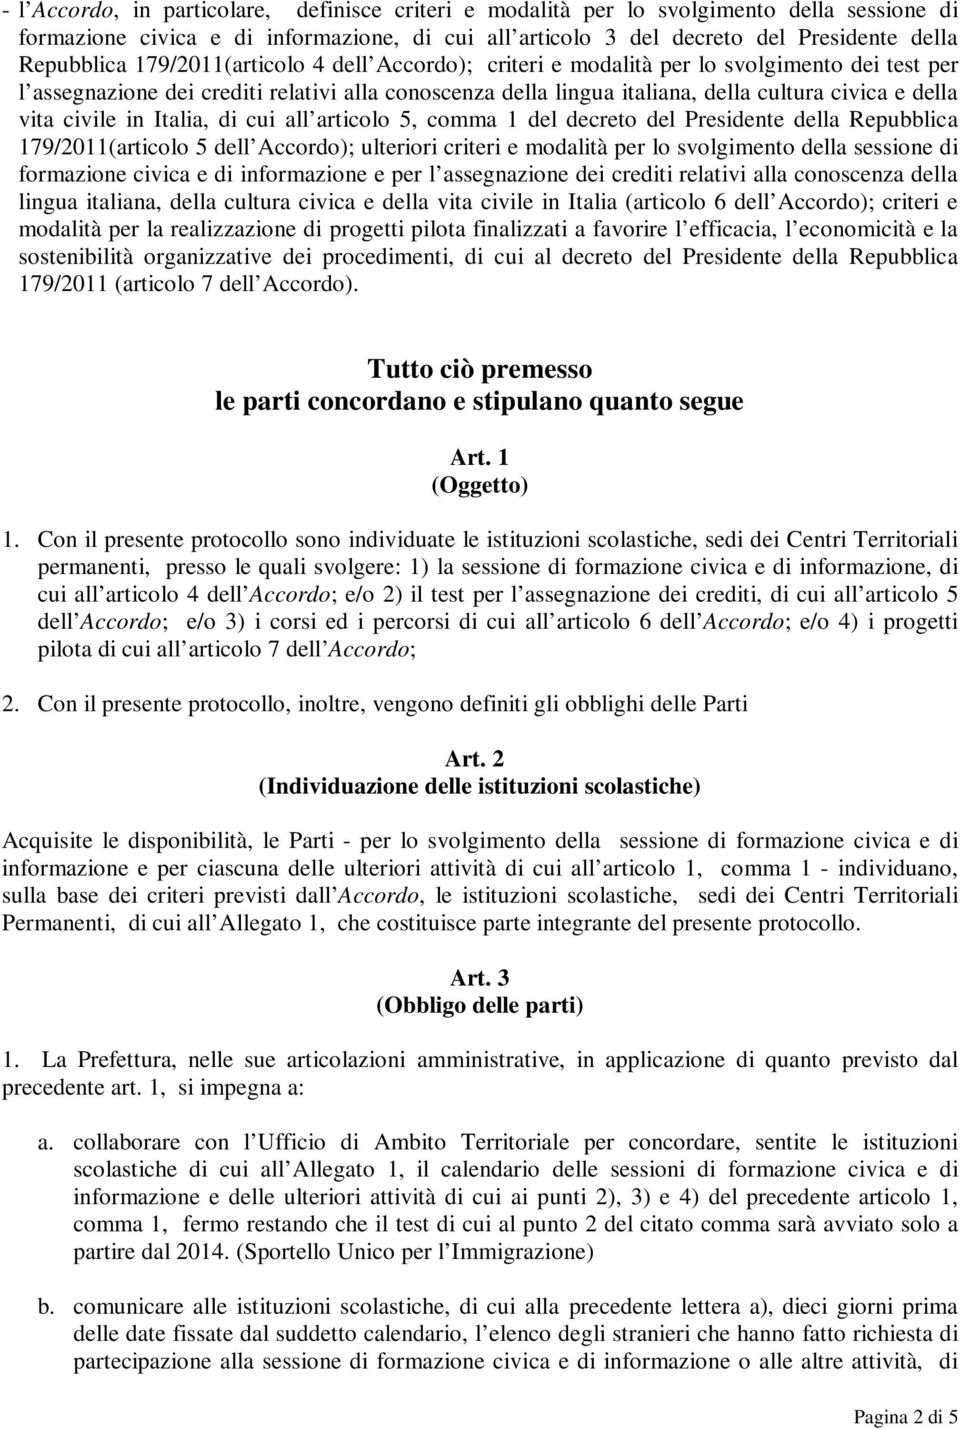 civile in Italia, di cui all articolo 5, comma 1 del decreto del Presidente della Repubblica 179/2011(articolo 5 dell Accordo); ulteriori criteri e modalità per lo svolgimento della sessione di